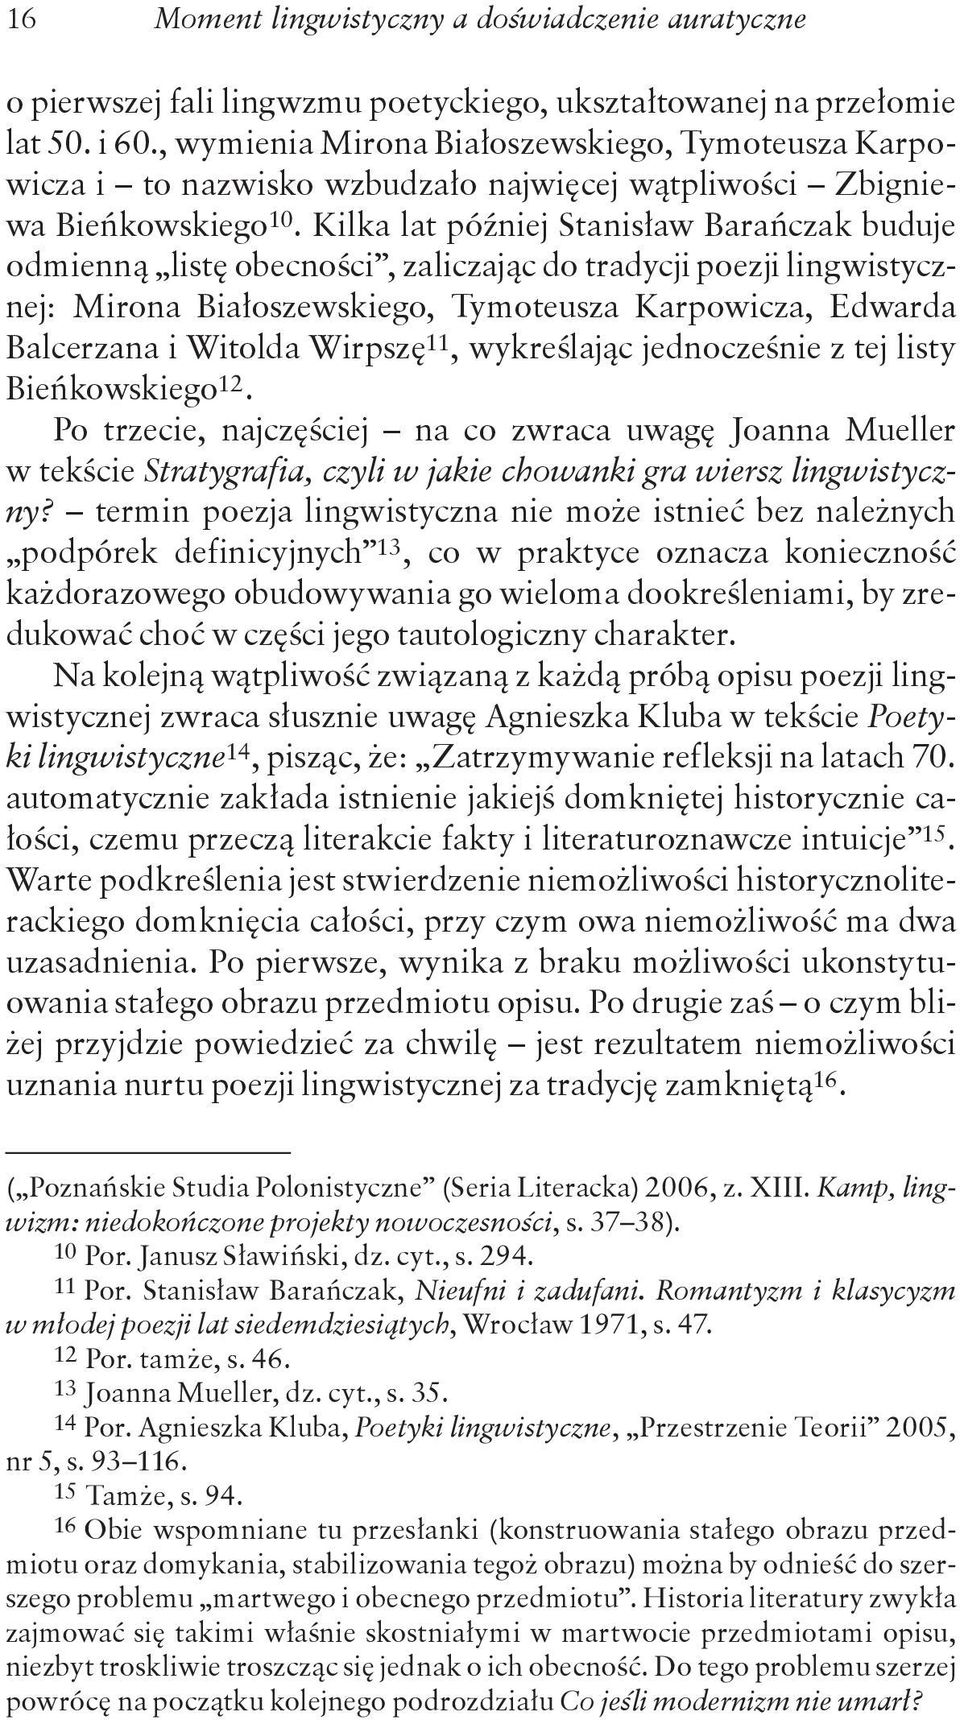 Kilka lat później Stanisław Barańczak buduje odmienną listę obecności, zaliczając do tradycji poezji lingwistycznej: Mirona Białoszewskiego, Tymoteusza Karpowicza, Edwarda Balcerzana i Witolda